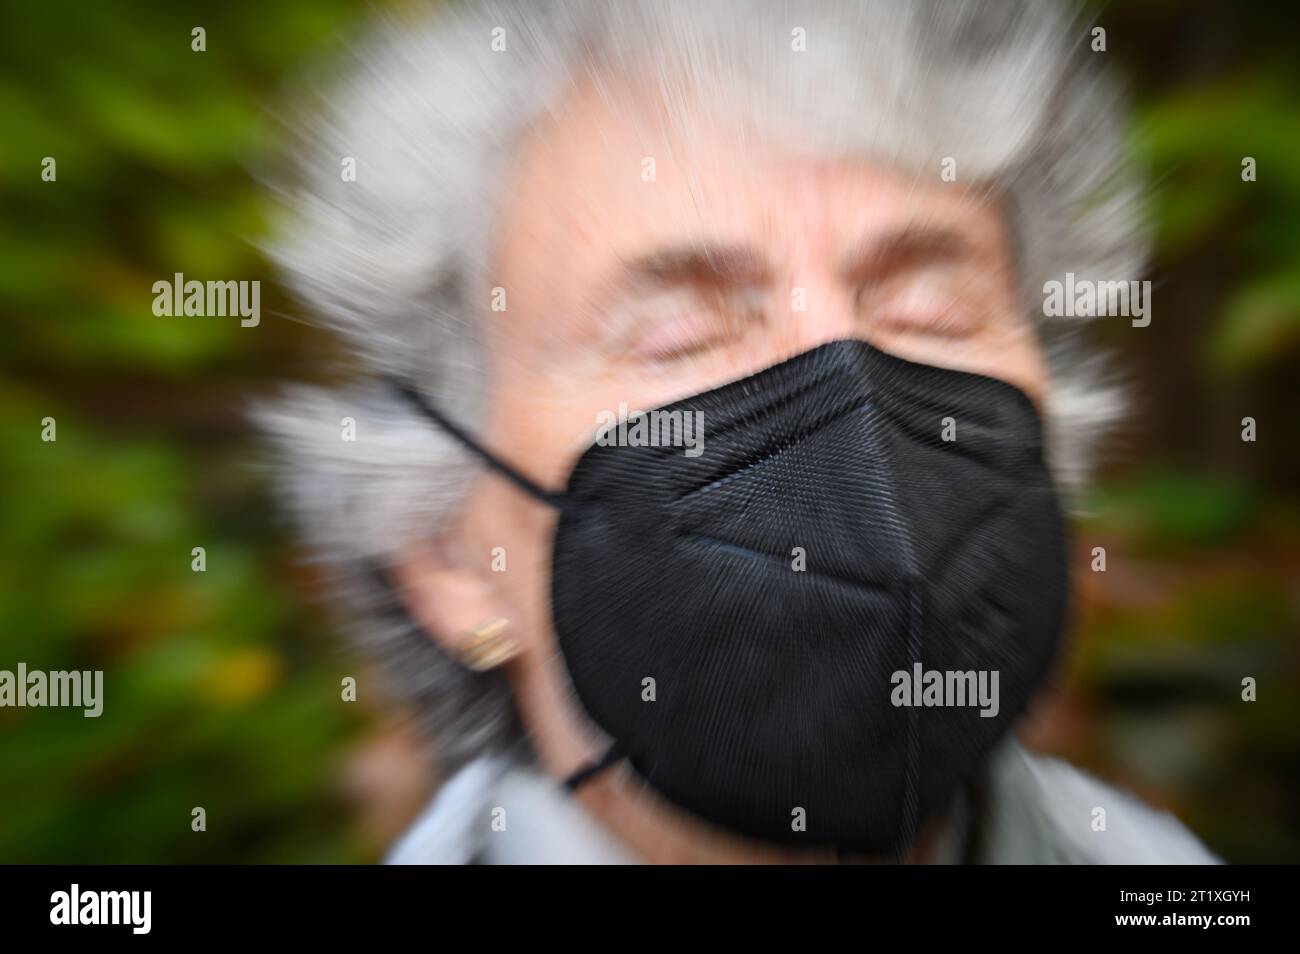 La femme porte un masque facial N95 du type en usage courant en raison des tentatives de contrôler la propagation du COVID-19. Banque D'Images